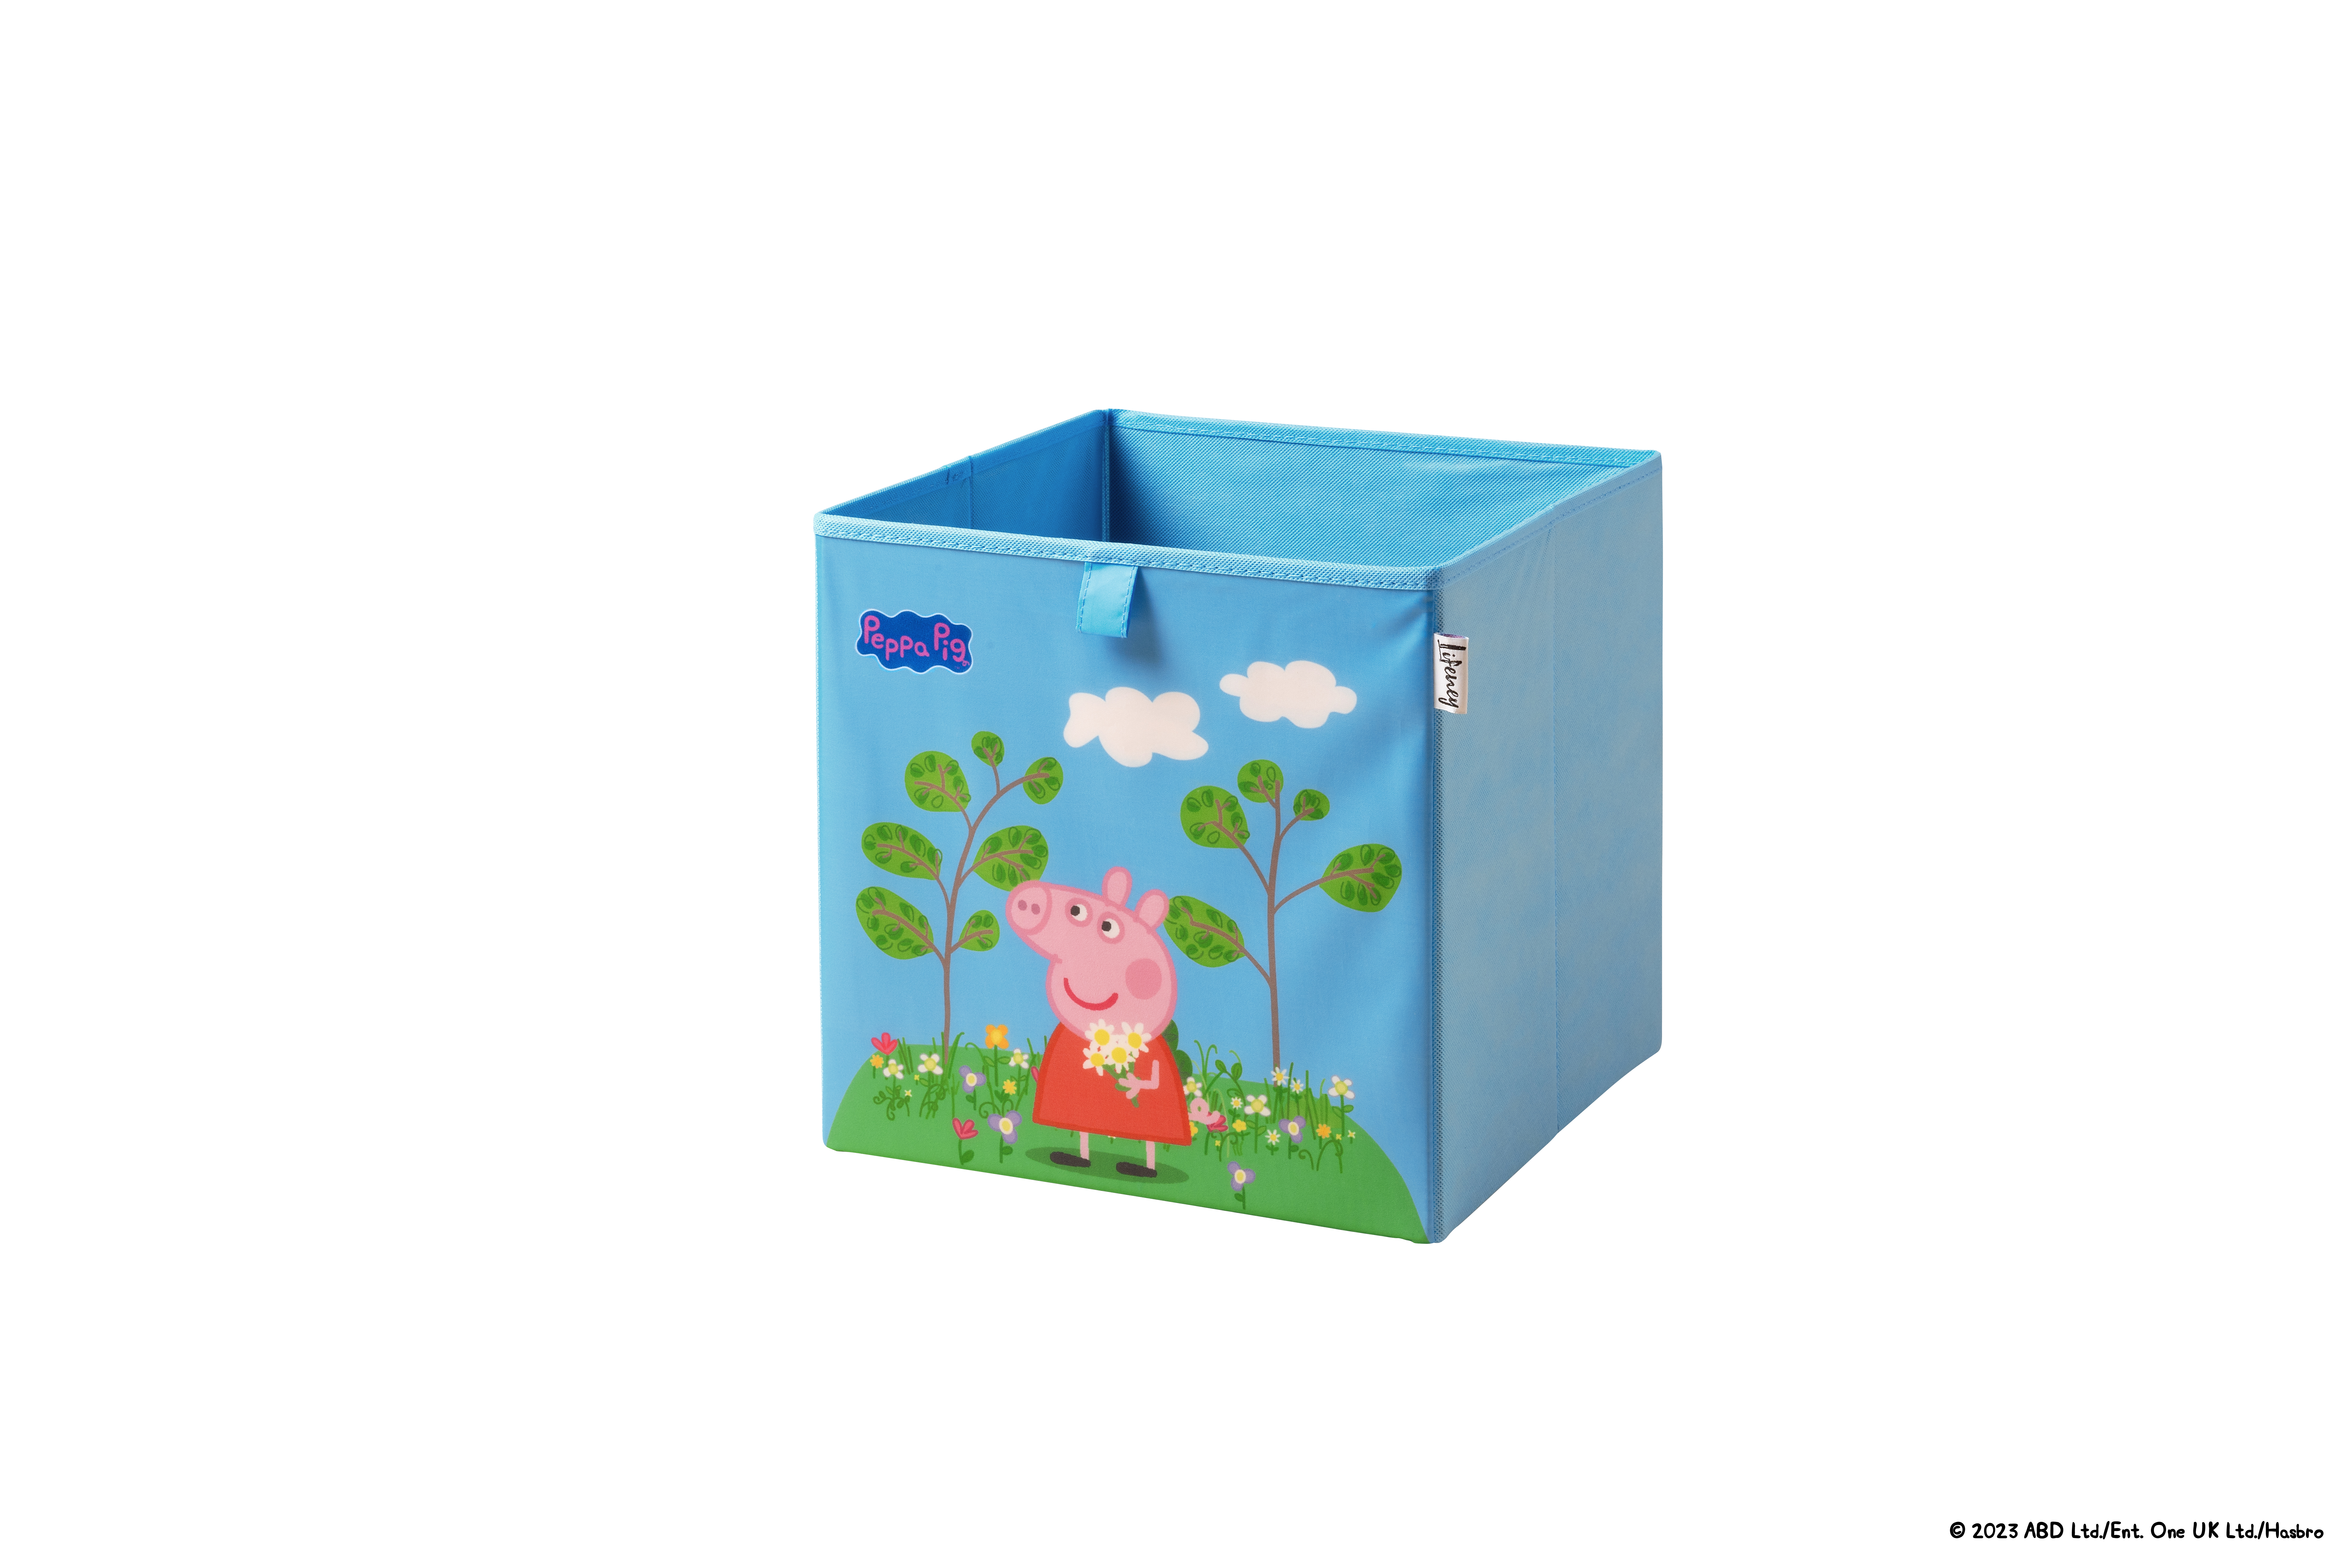 Lifeney - Caja de Almacenamiento Peppa en Prado de Flores, Ideal para Juguetes y Accesorios, Diseño de Peppa Pig, con 5 Años de Garantía